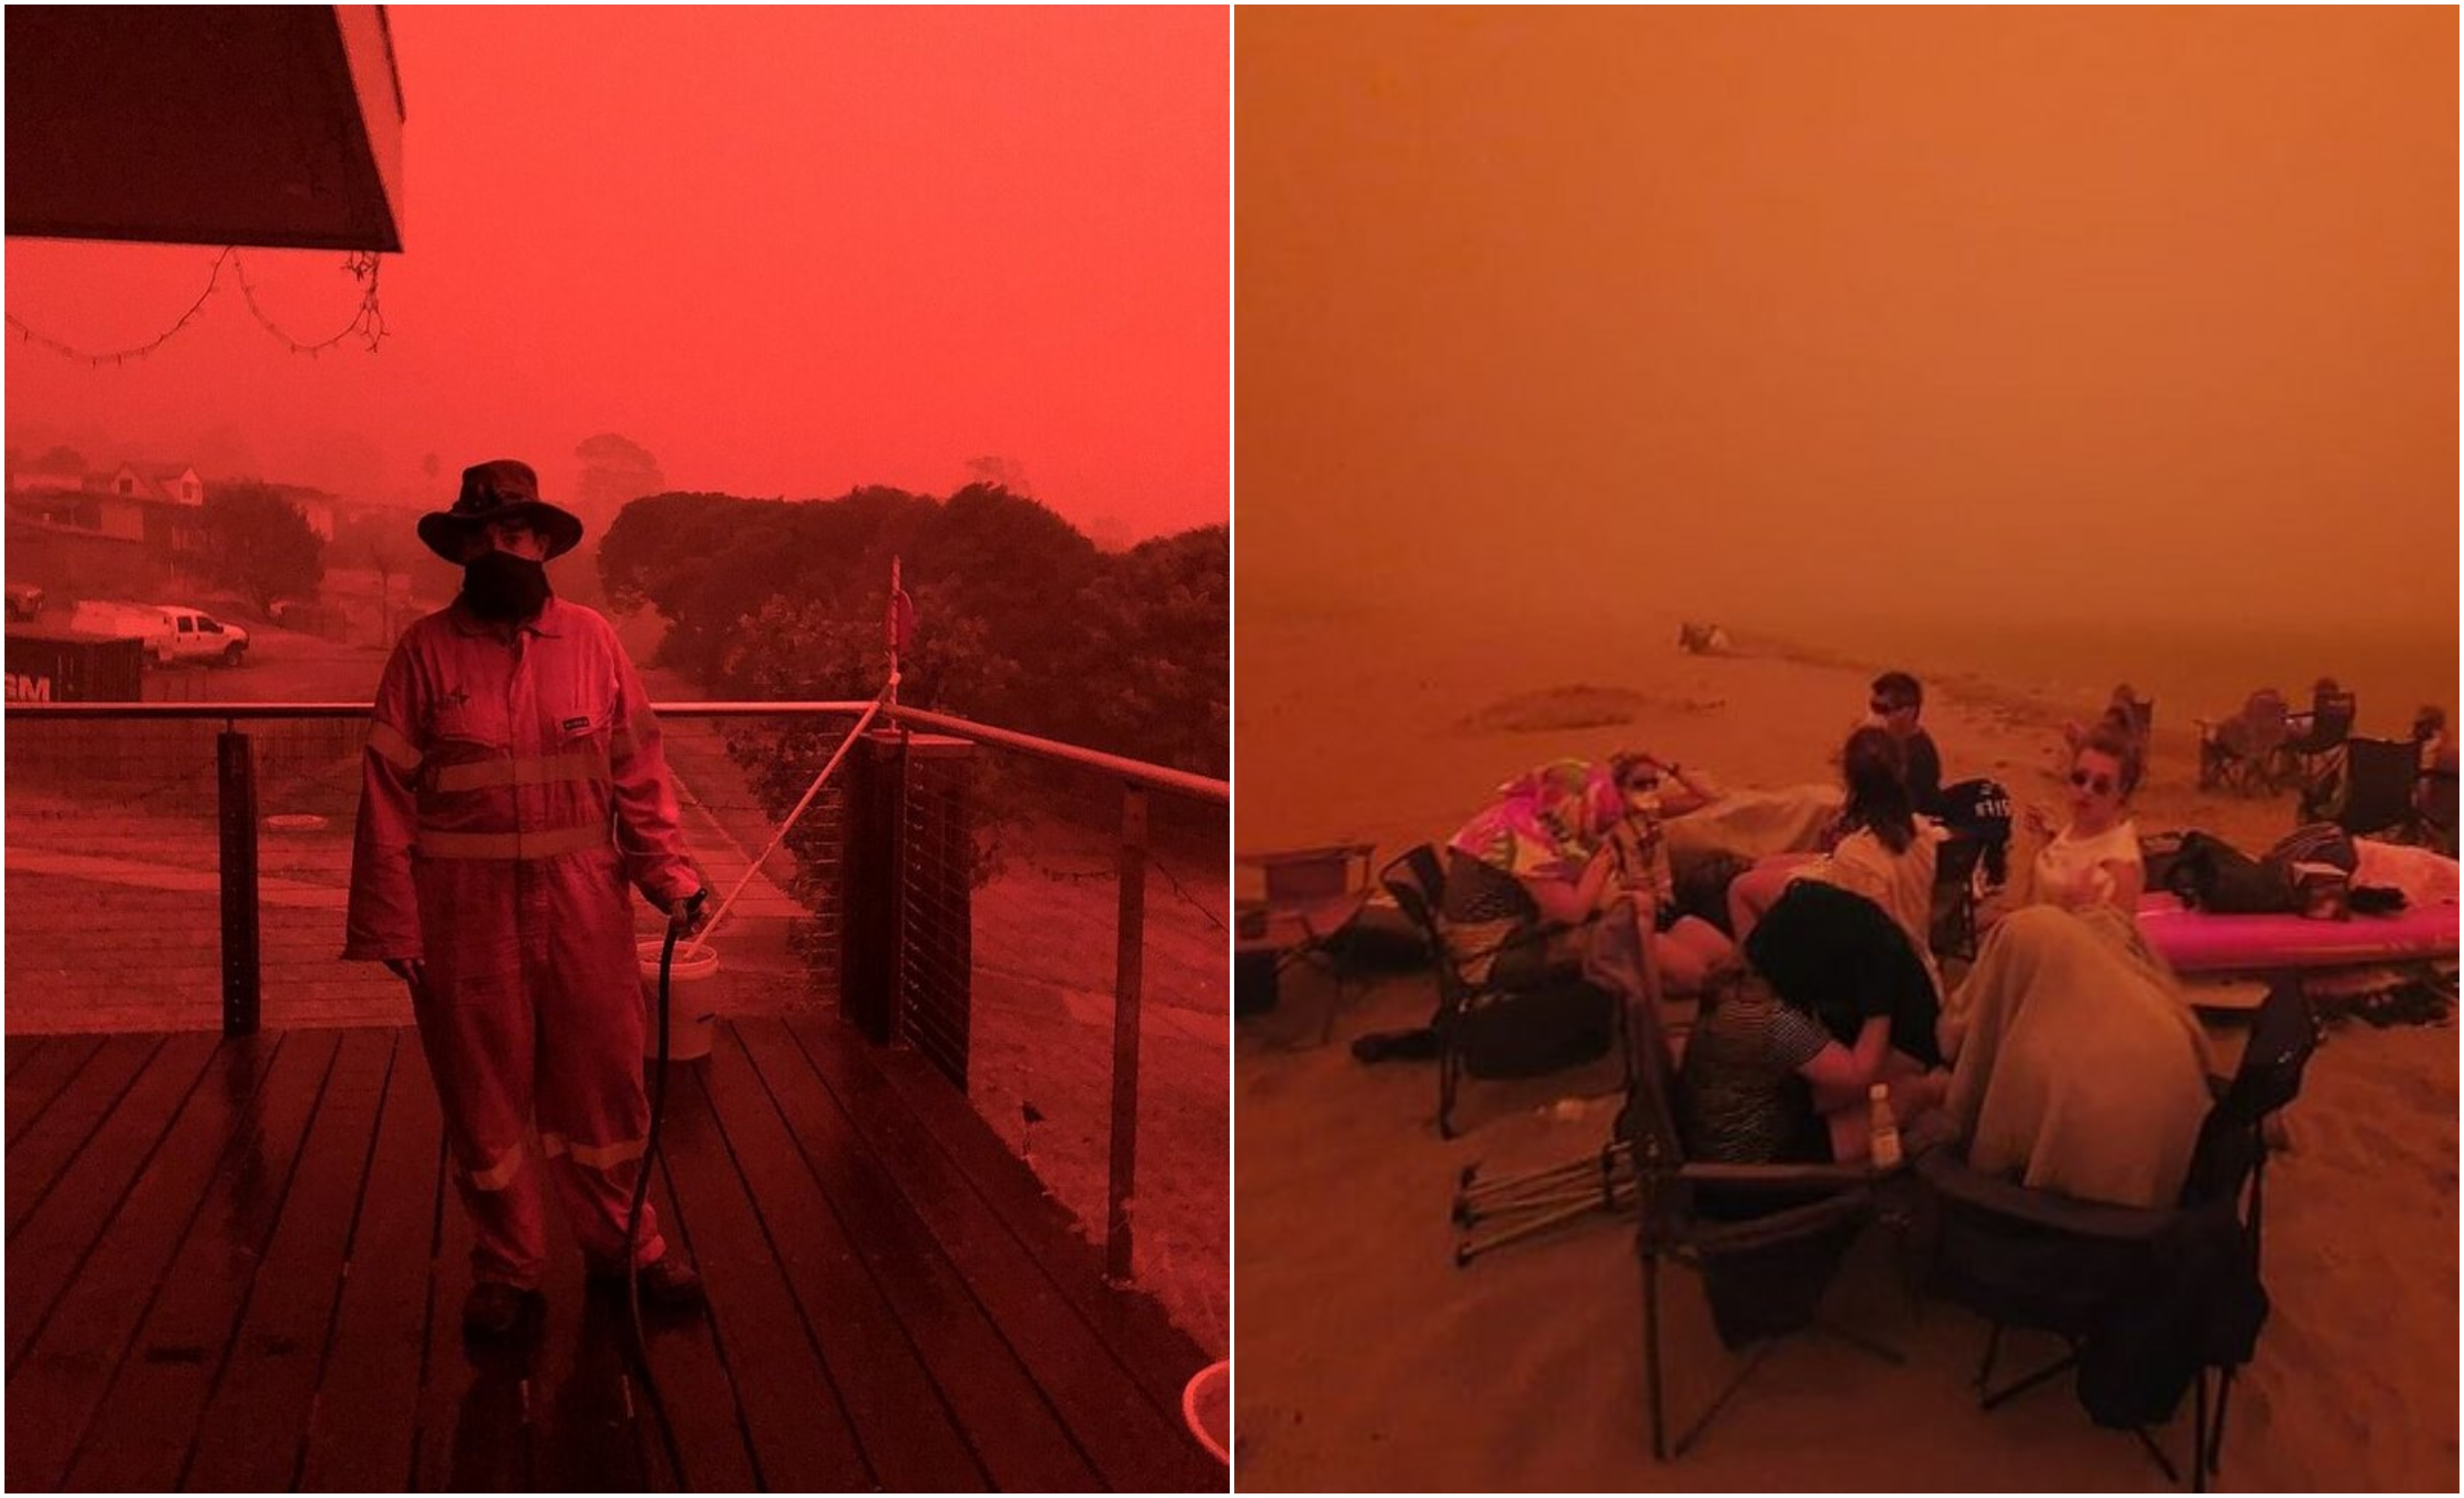 قرية بالكامل تتحول إلى اللون الأحمر في أستراليا.. وجمر حار يسقط من السماء.. ما السر؟